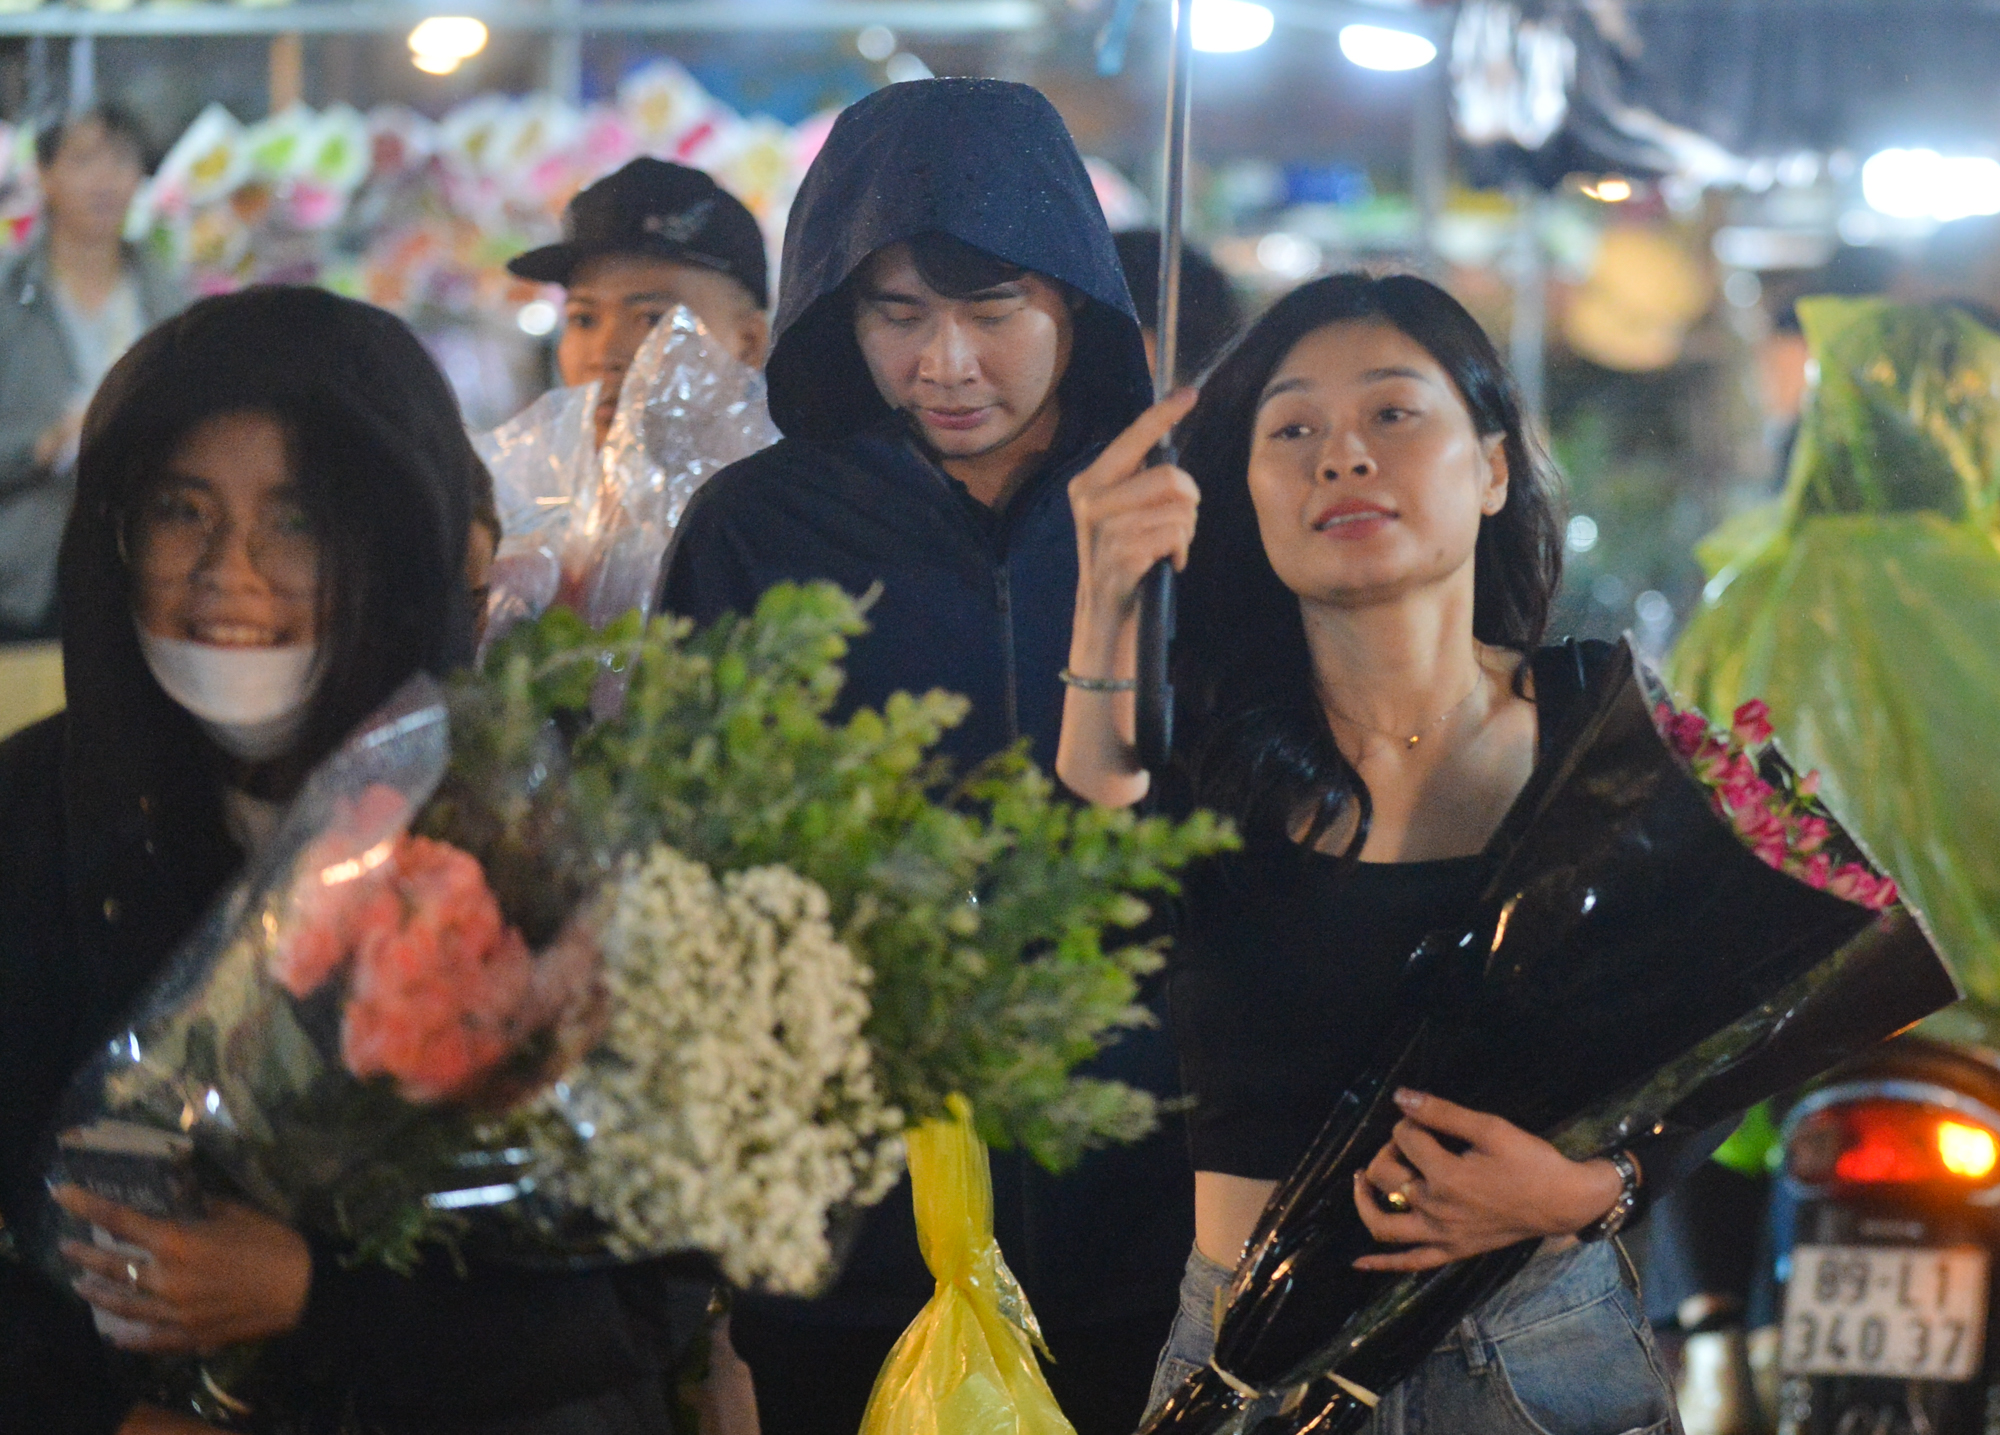 Ảnh: Mặc áo mưa, đội ô đi chợ hoa đêm lớn nhất miền Bắc trước ngày Phụ nữ Việt Nam 20/10, nhiều người co ro vì lạnh - Ảnh 9.